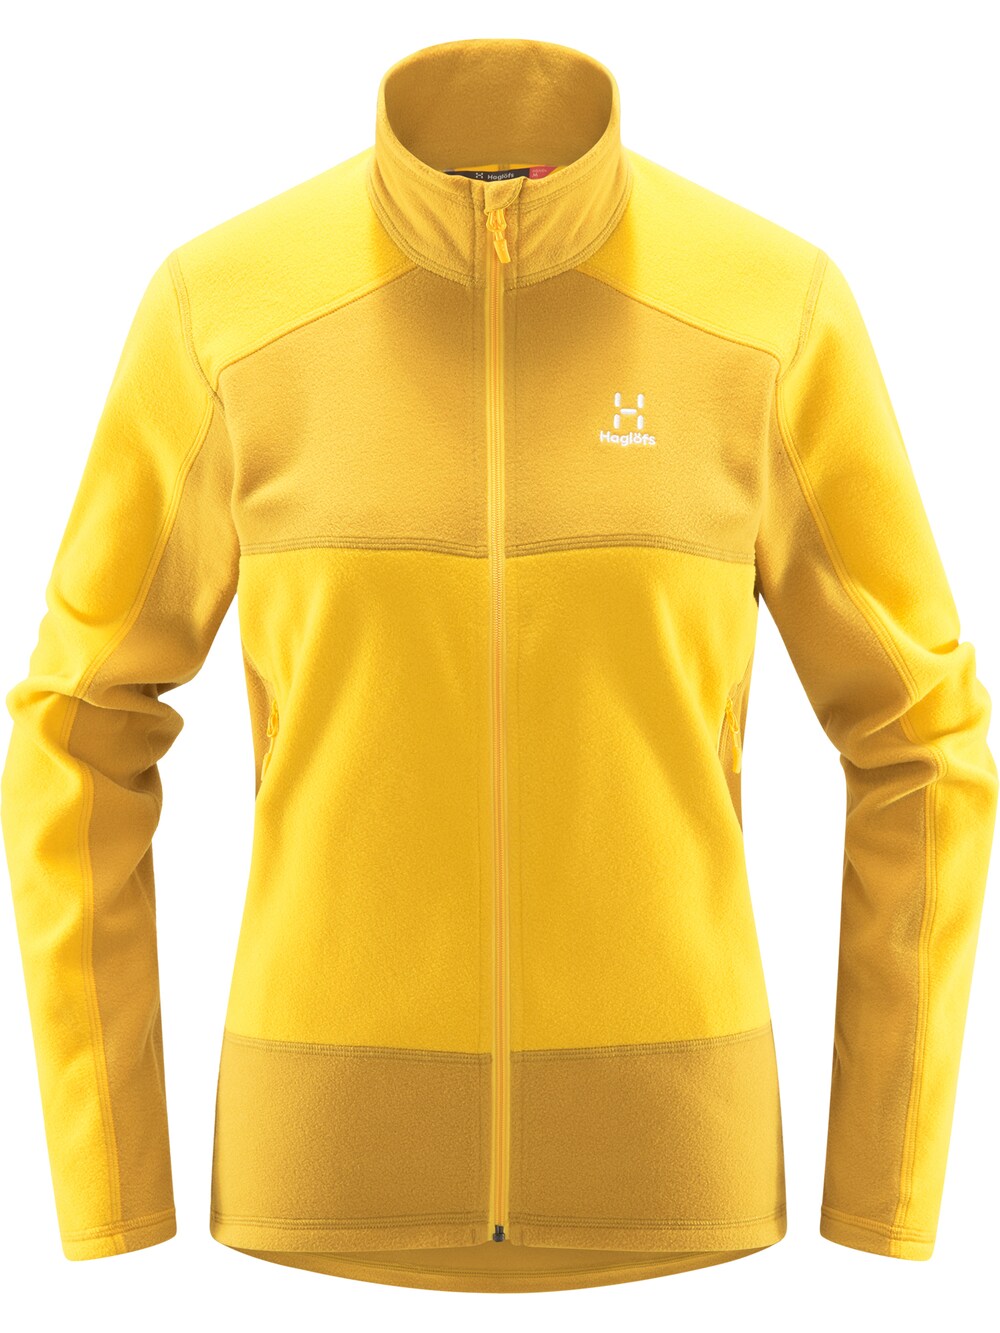 Спортивная флисовая куртка Haglöfs Buteo, желтый/шафран флисовая куртка buteo средней длины haglöfs зеленый